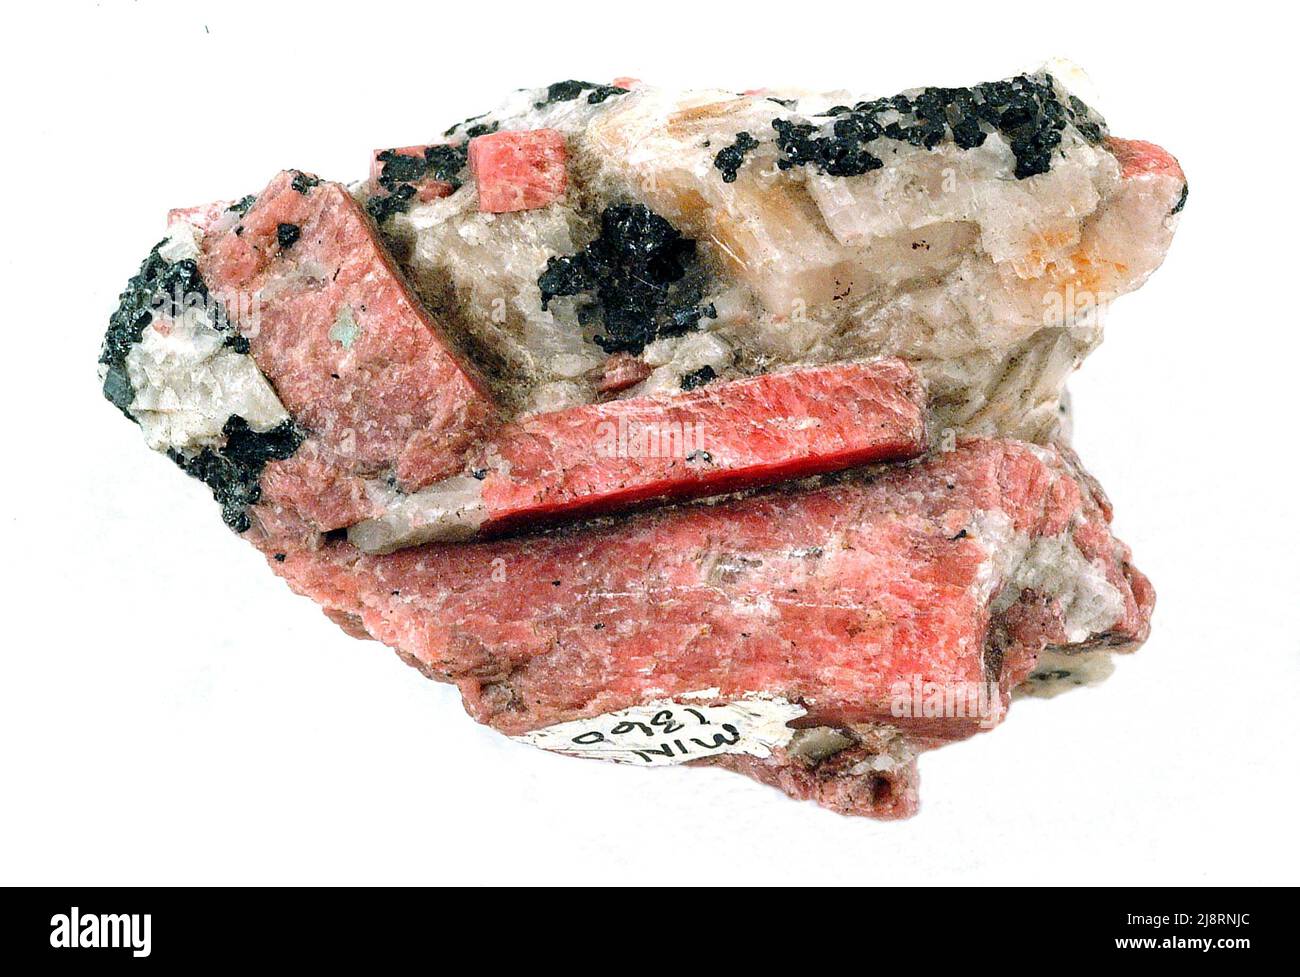 Rhodonit ist ein Mitglied der Pyroxengruppe mit der Mineralformel (Mn,Fe,mg,Ca)5(SiO3)5. Rhodonit ist für Schmuck geschnitzt. Der Name stammt vom griechischen Wort für Rose, Rhodon. Diese Probe ist etwa 5 cm lang. Stockfoto